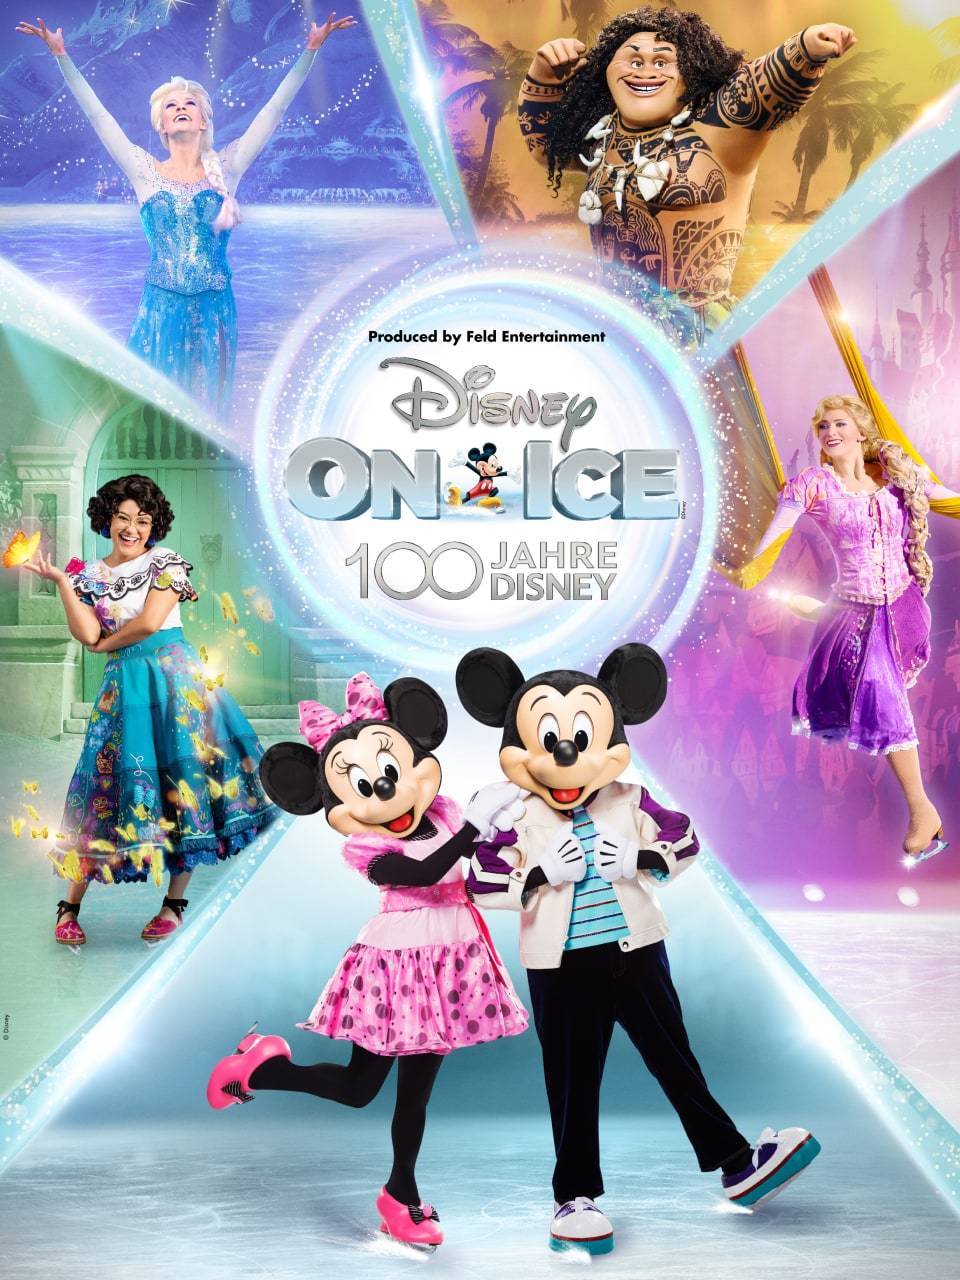 Das Disney On Ice - 100 Jahre Disney Logo wird umgeben von Micky und Minnie Maus, Elsa, Maui, Rapunzel und Mirabel.